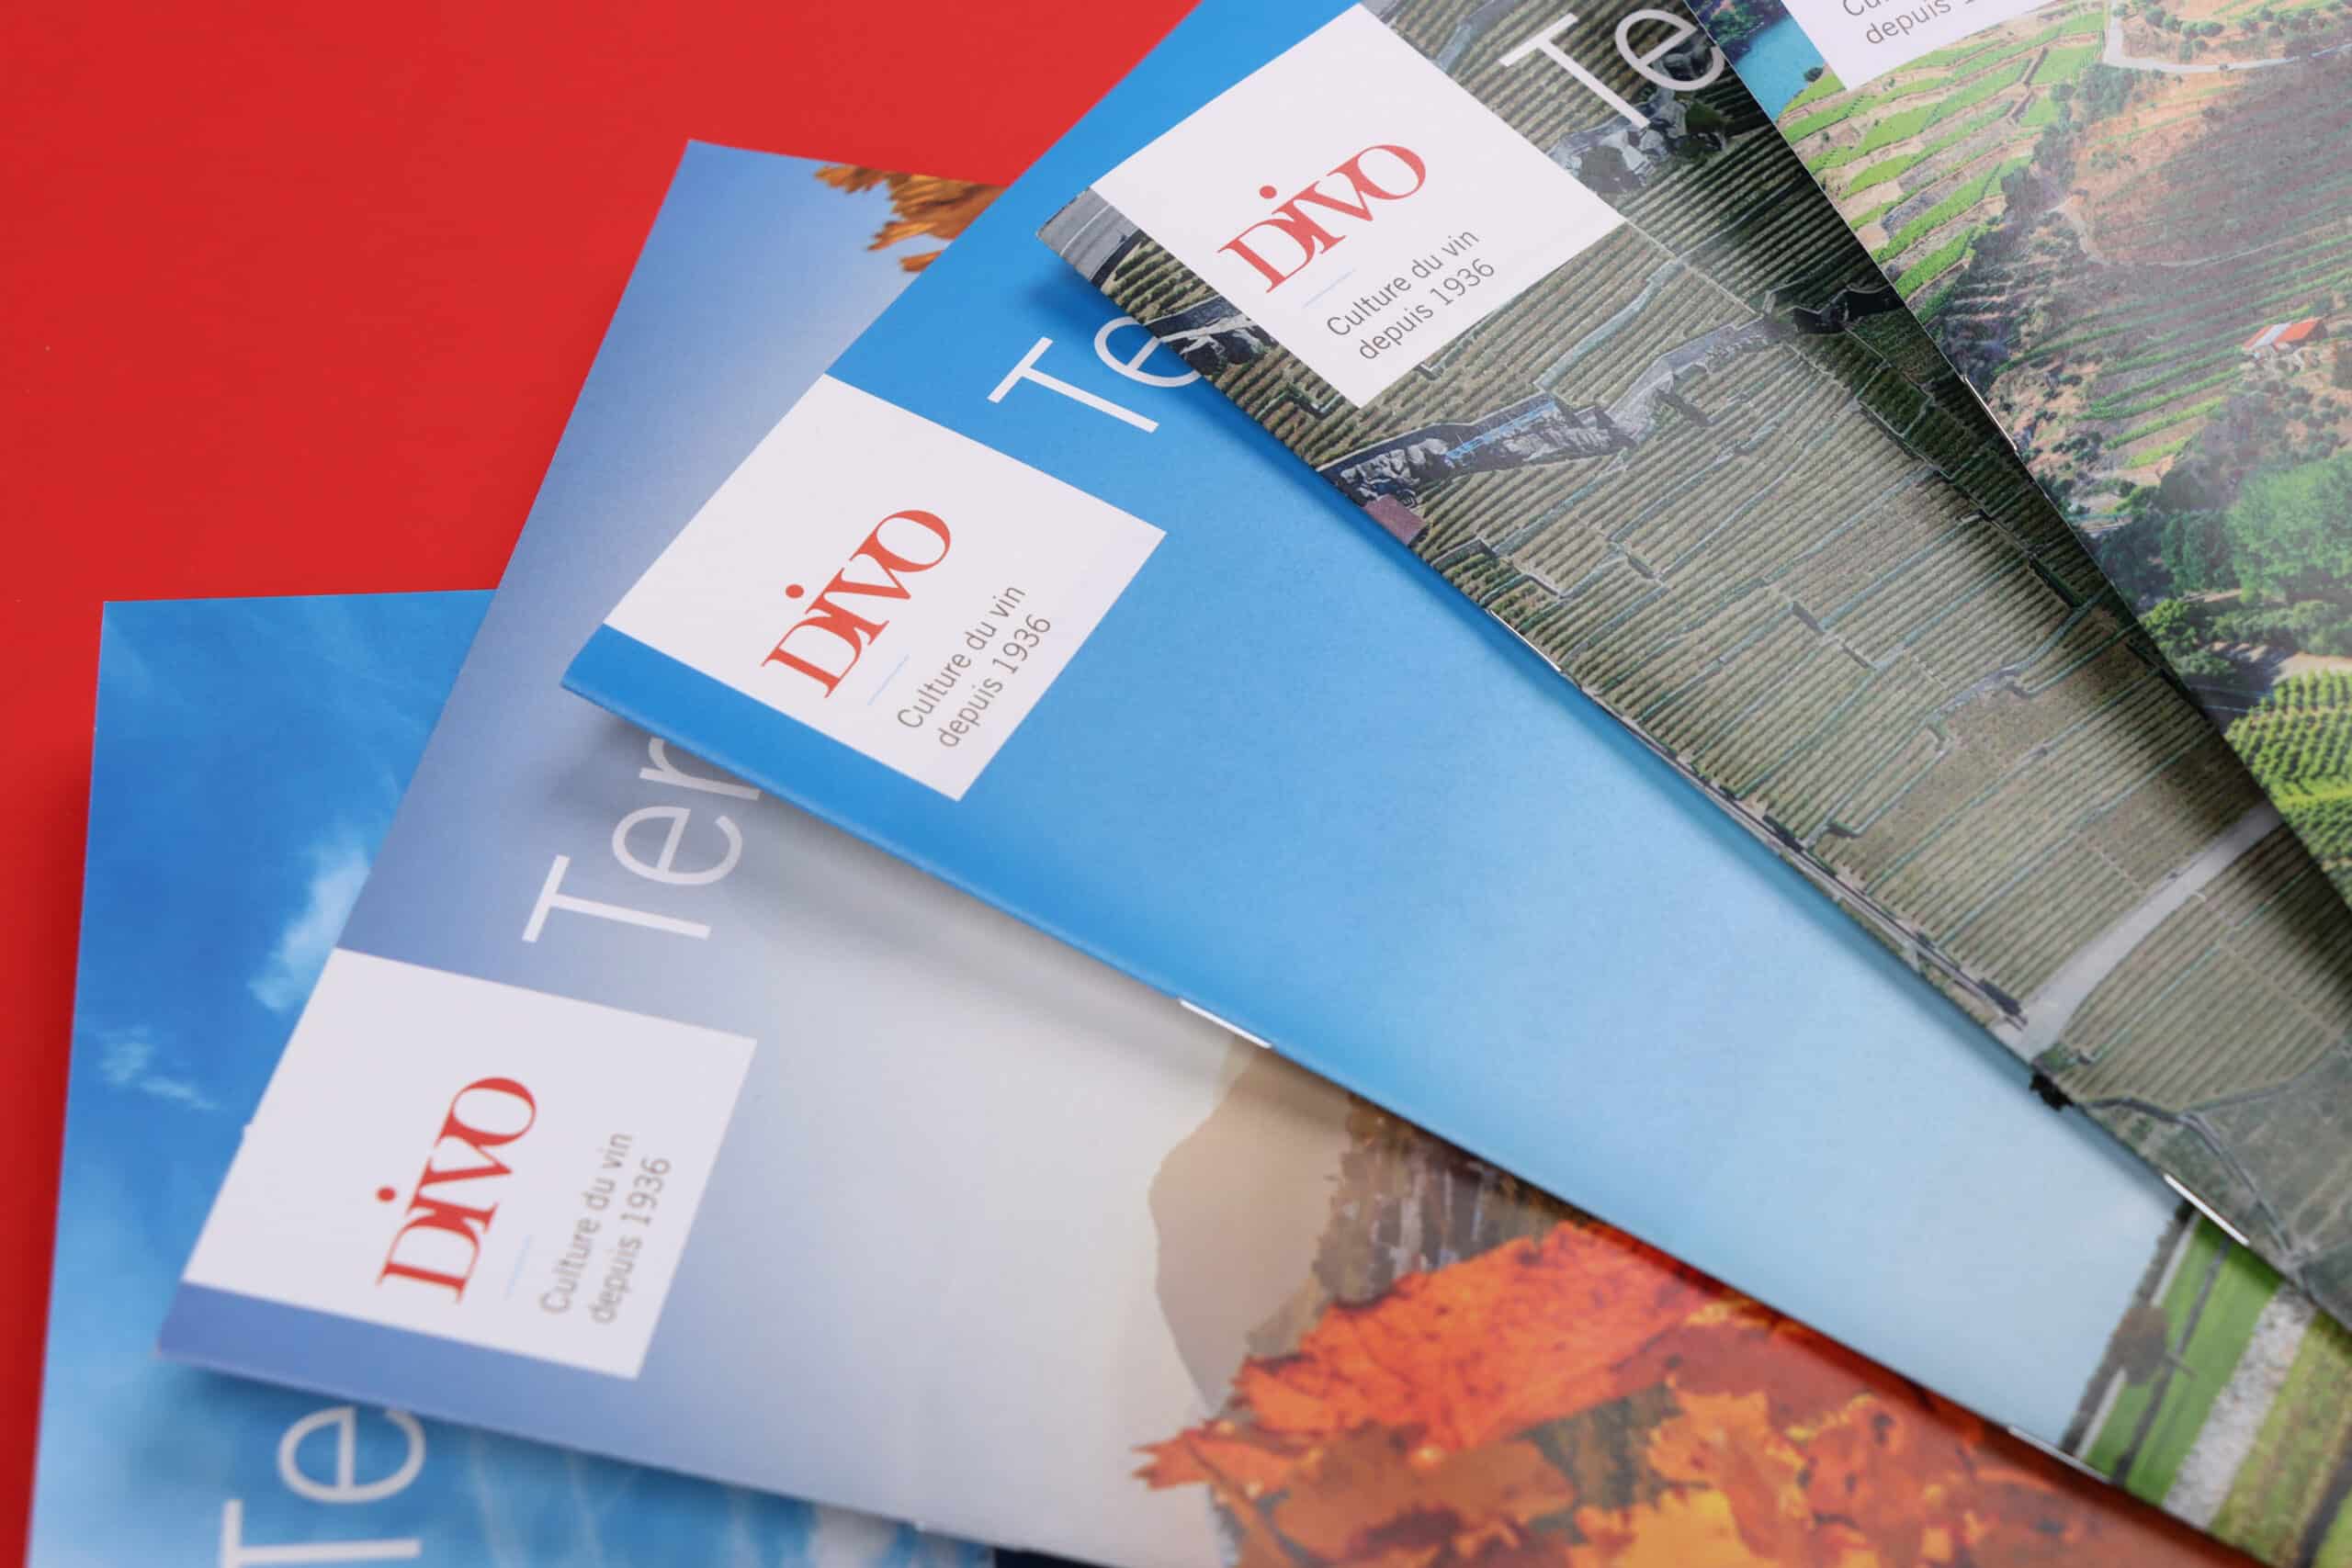 Cinq revues DIVO Terroir en éventail, mettant l'accent sur le logo de chaque couverture.